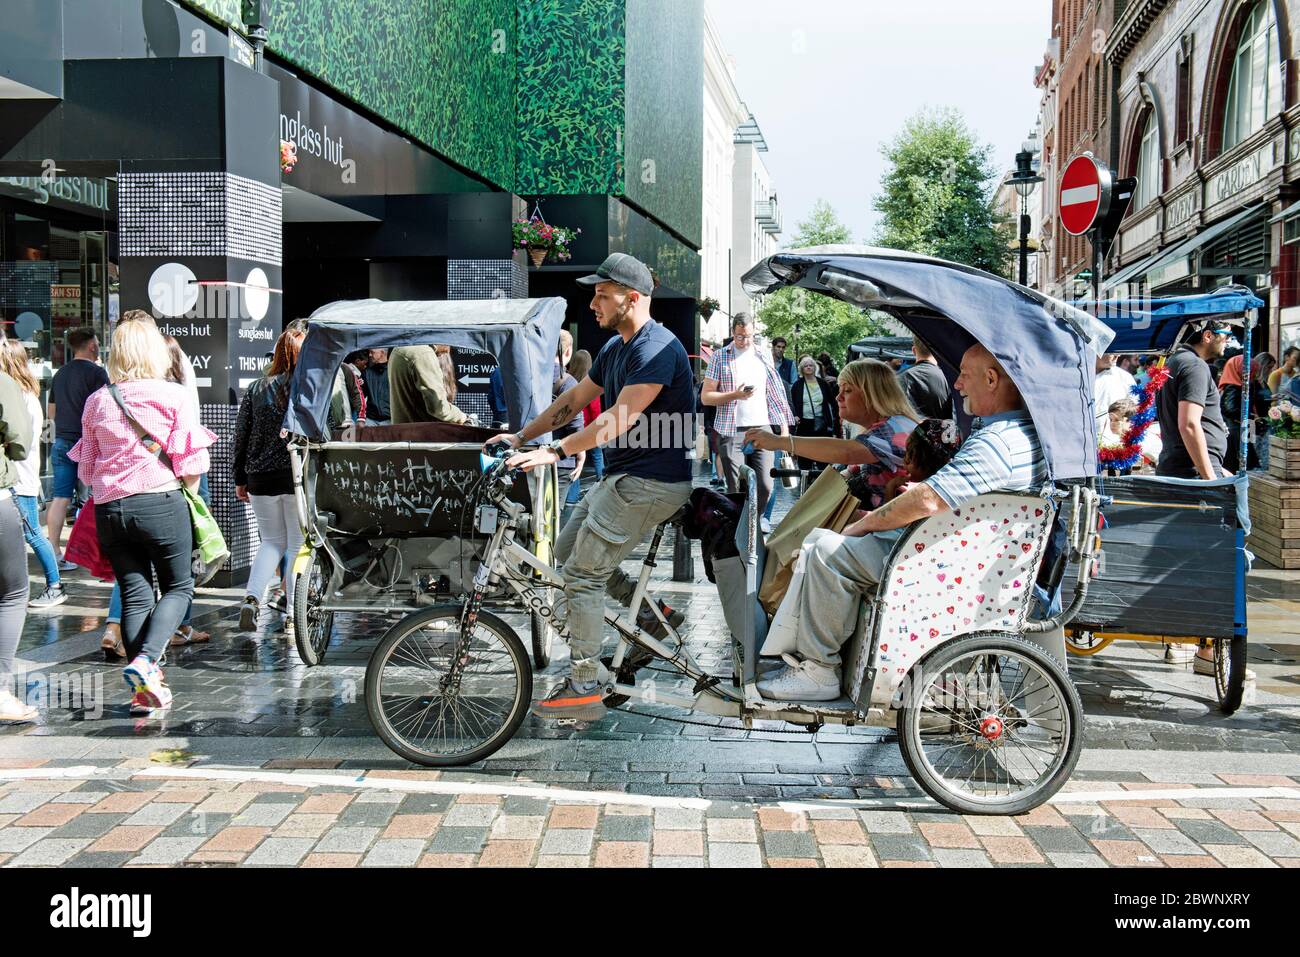 Ecotaxi, pedicab o risciò in bicicletta urbana con cavaliere e passanti Covent Garden, Londra Centrale, Inghilterra Gran Bretagna Foto Stock